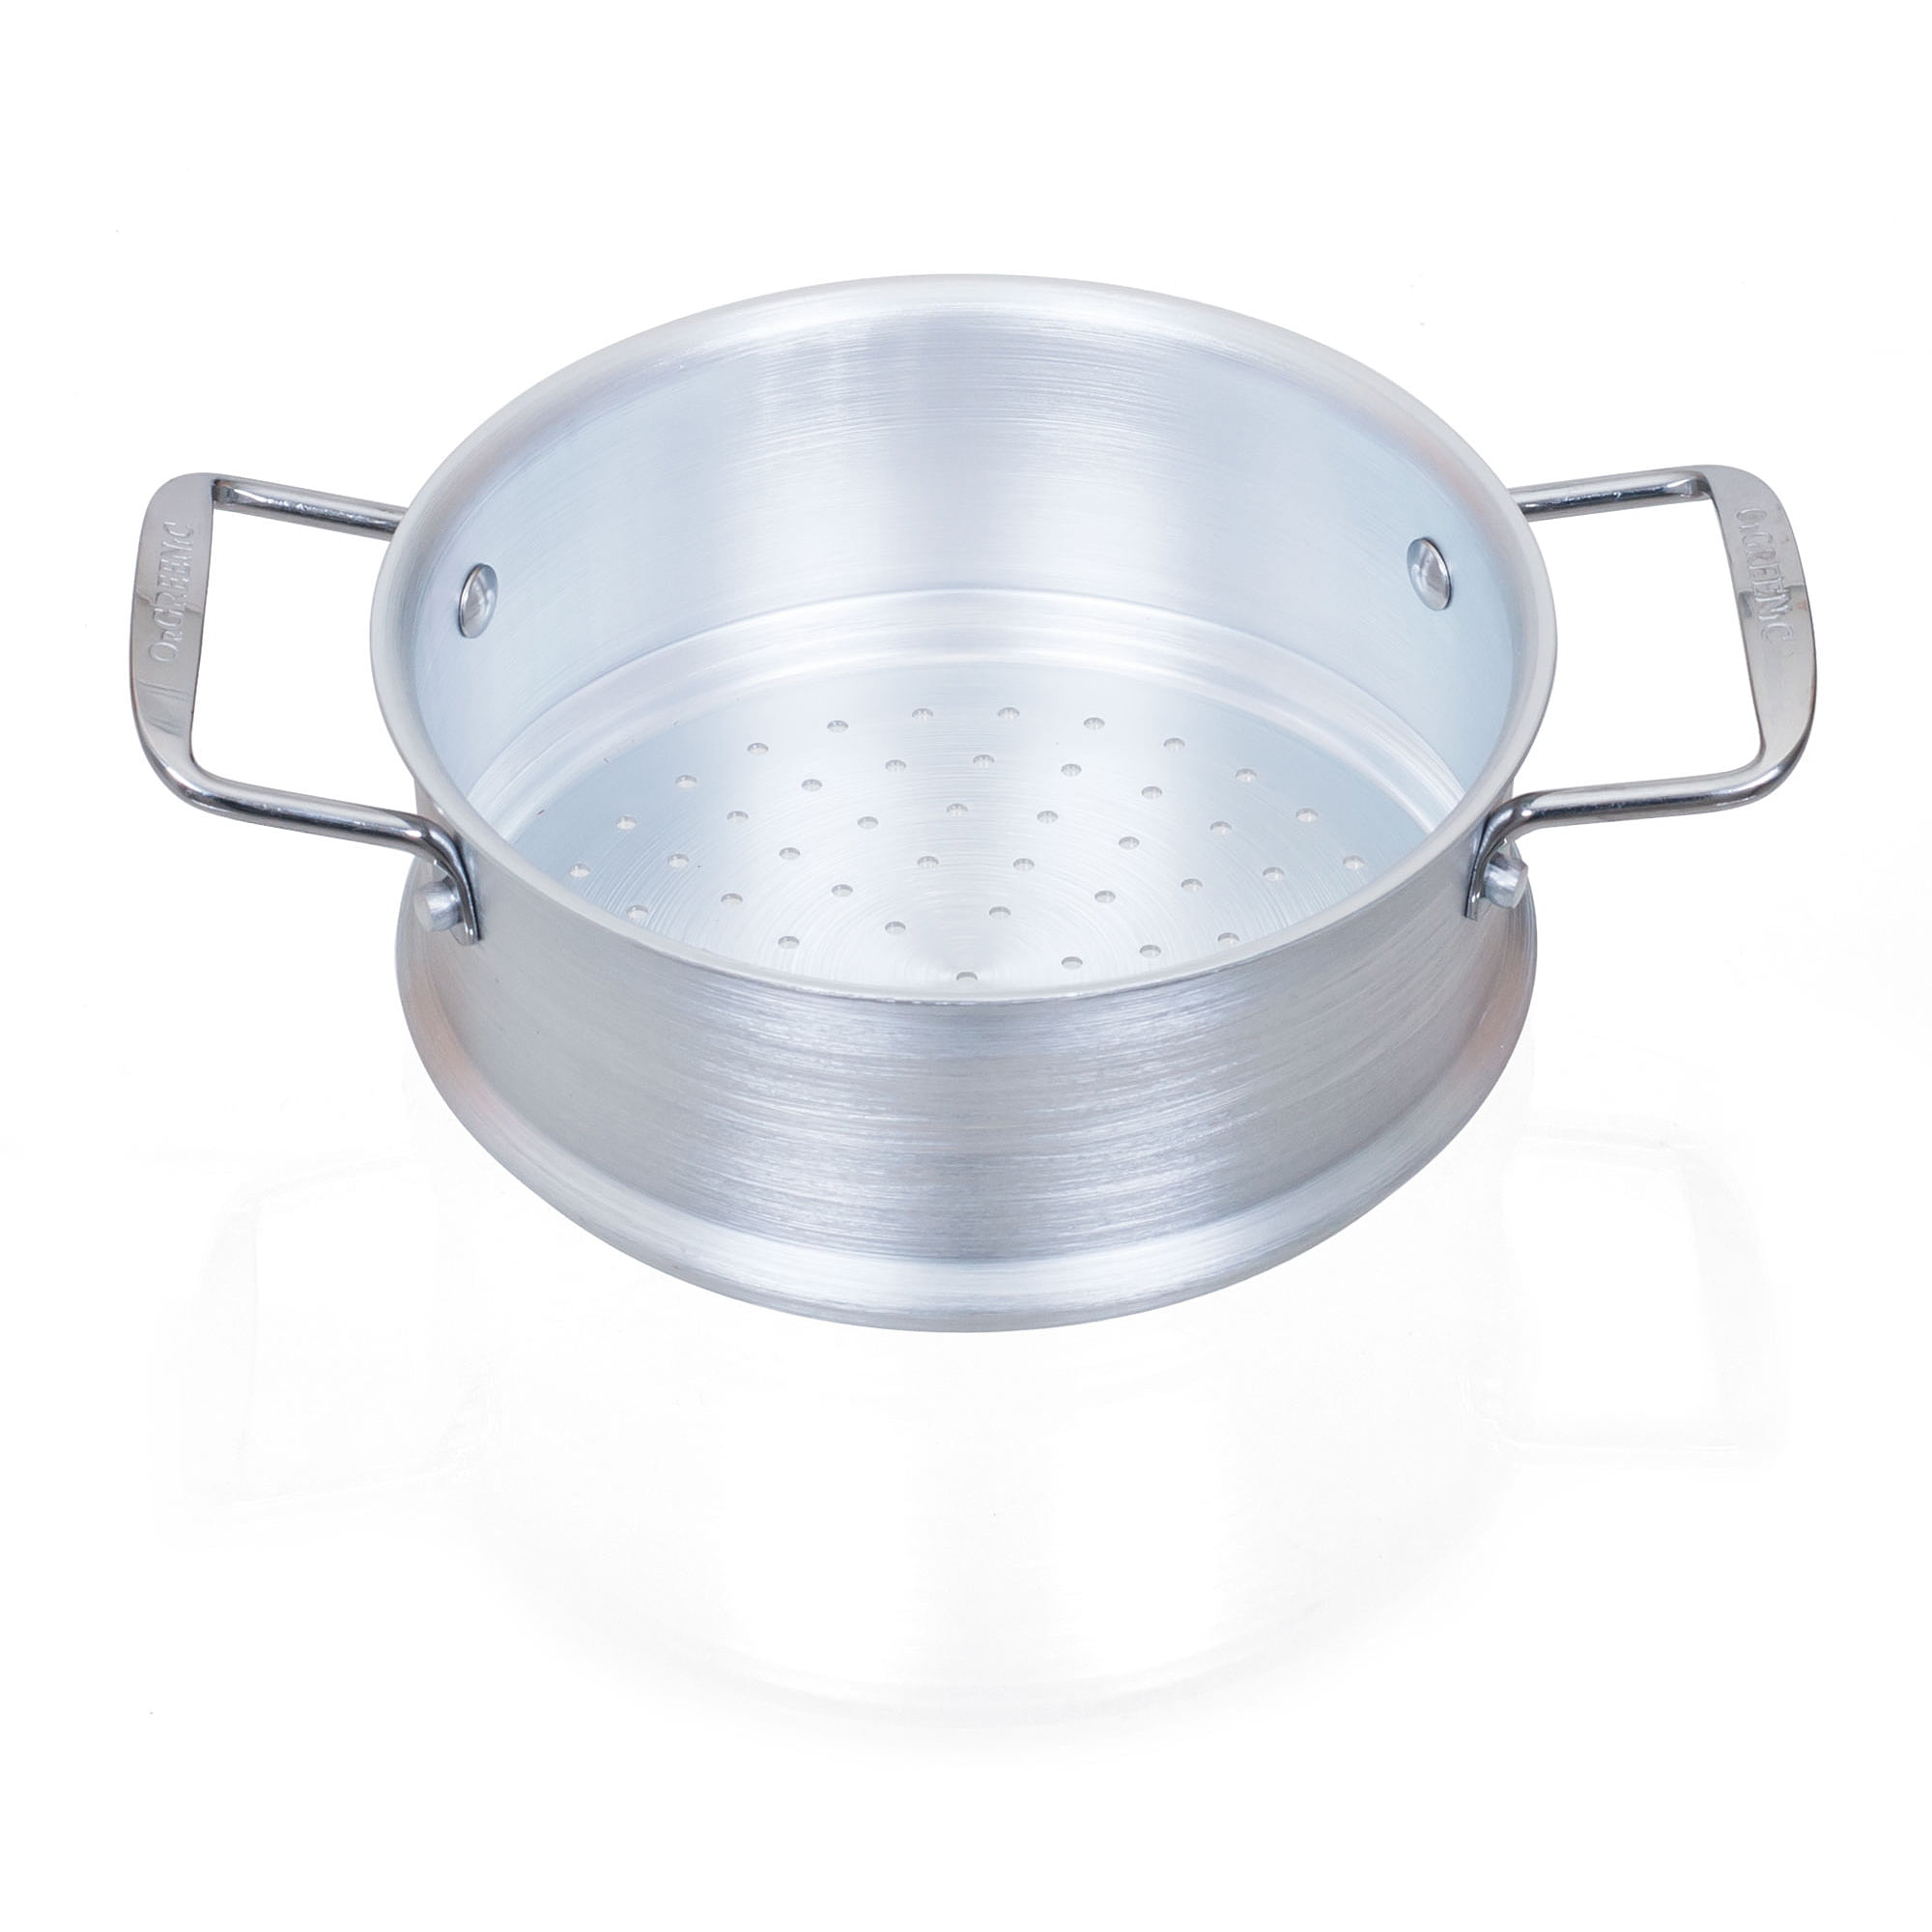 HEQU Small Steamer, Stainless Steel Steamer Insert For Cooking Pots, Pot  Steam Insert, Steam Grid, Inner Diameter 16-26 Cm